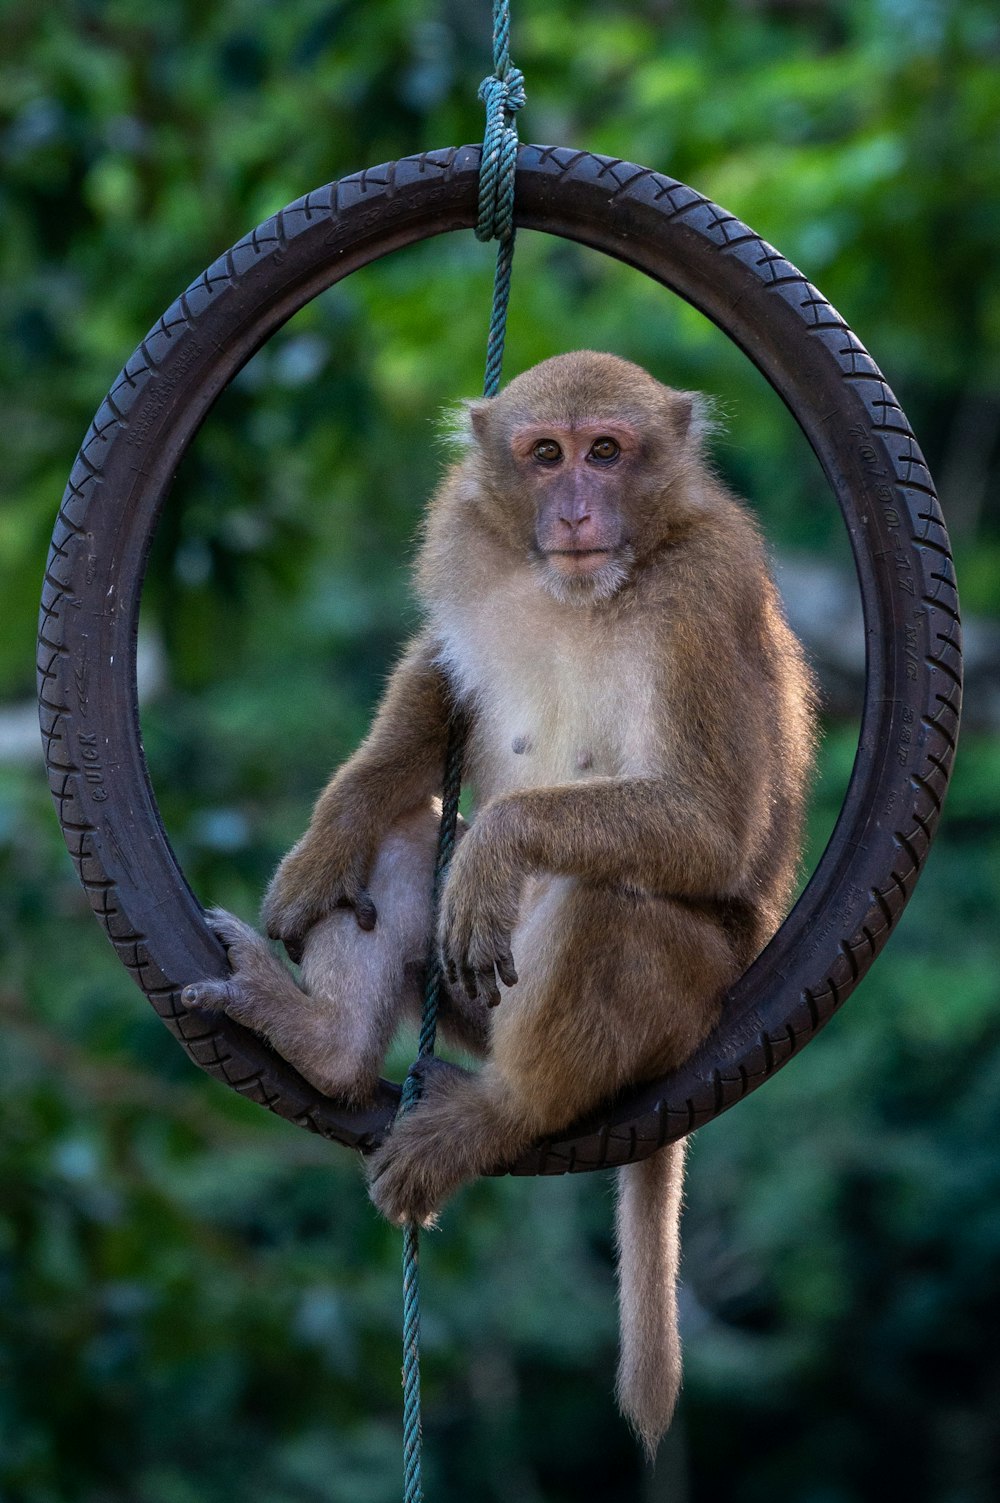 a monkey sitting on a swing